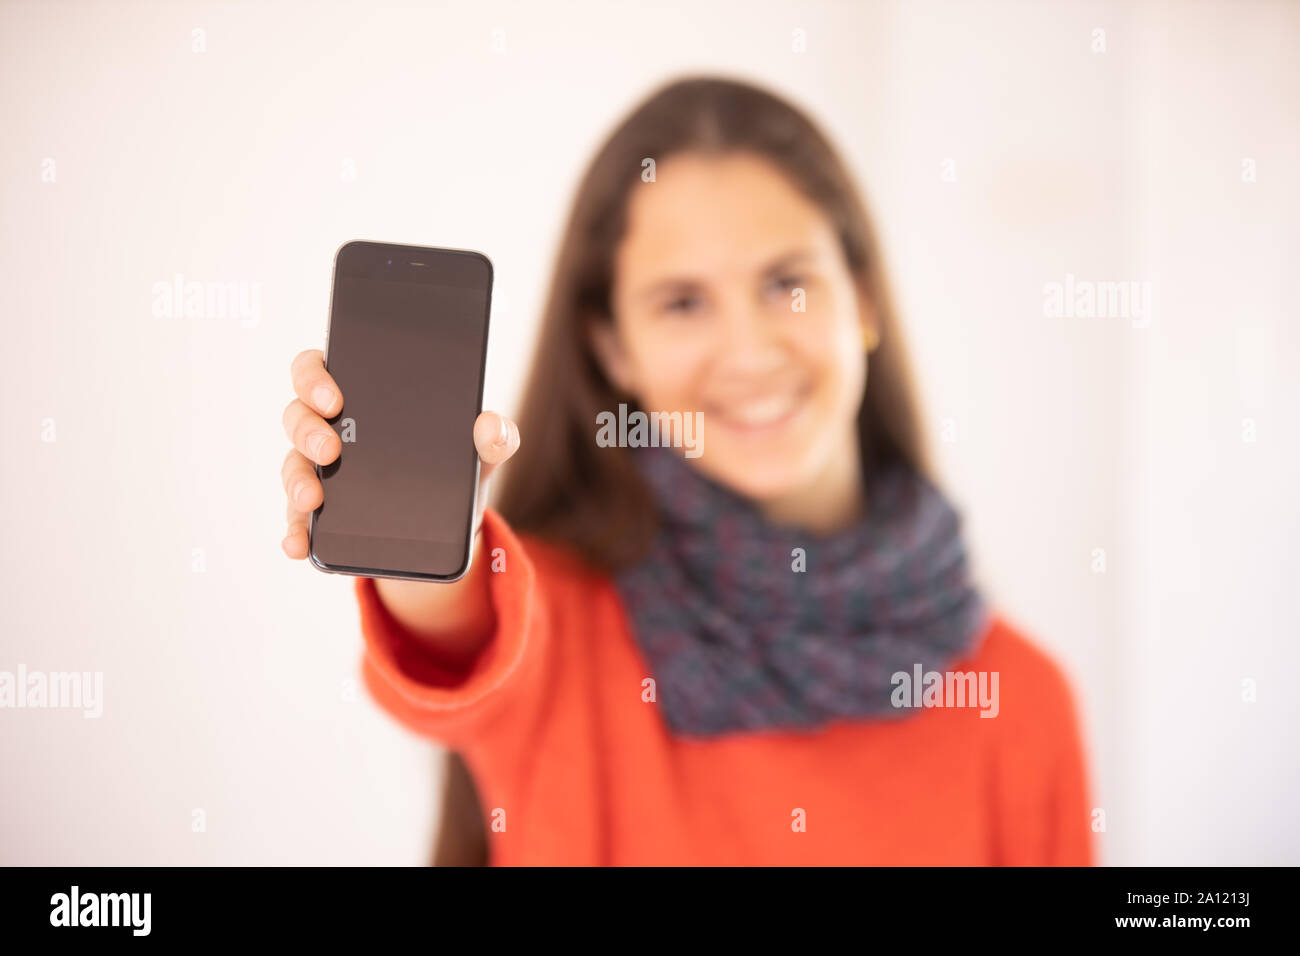 Chica adolescente feliz mostrando una maqueta de teléfono inteligente Foto Stock